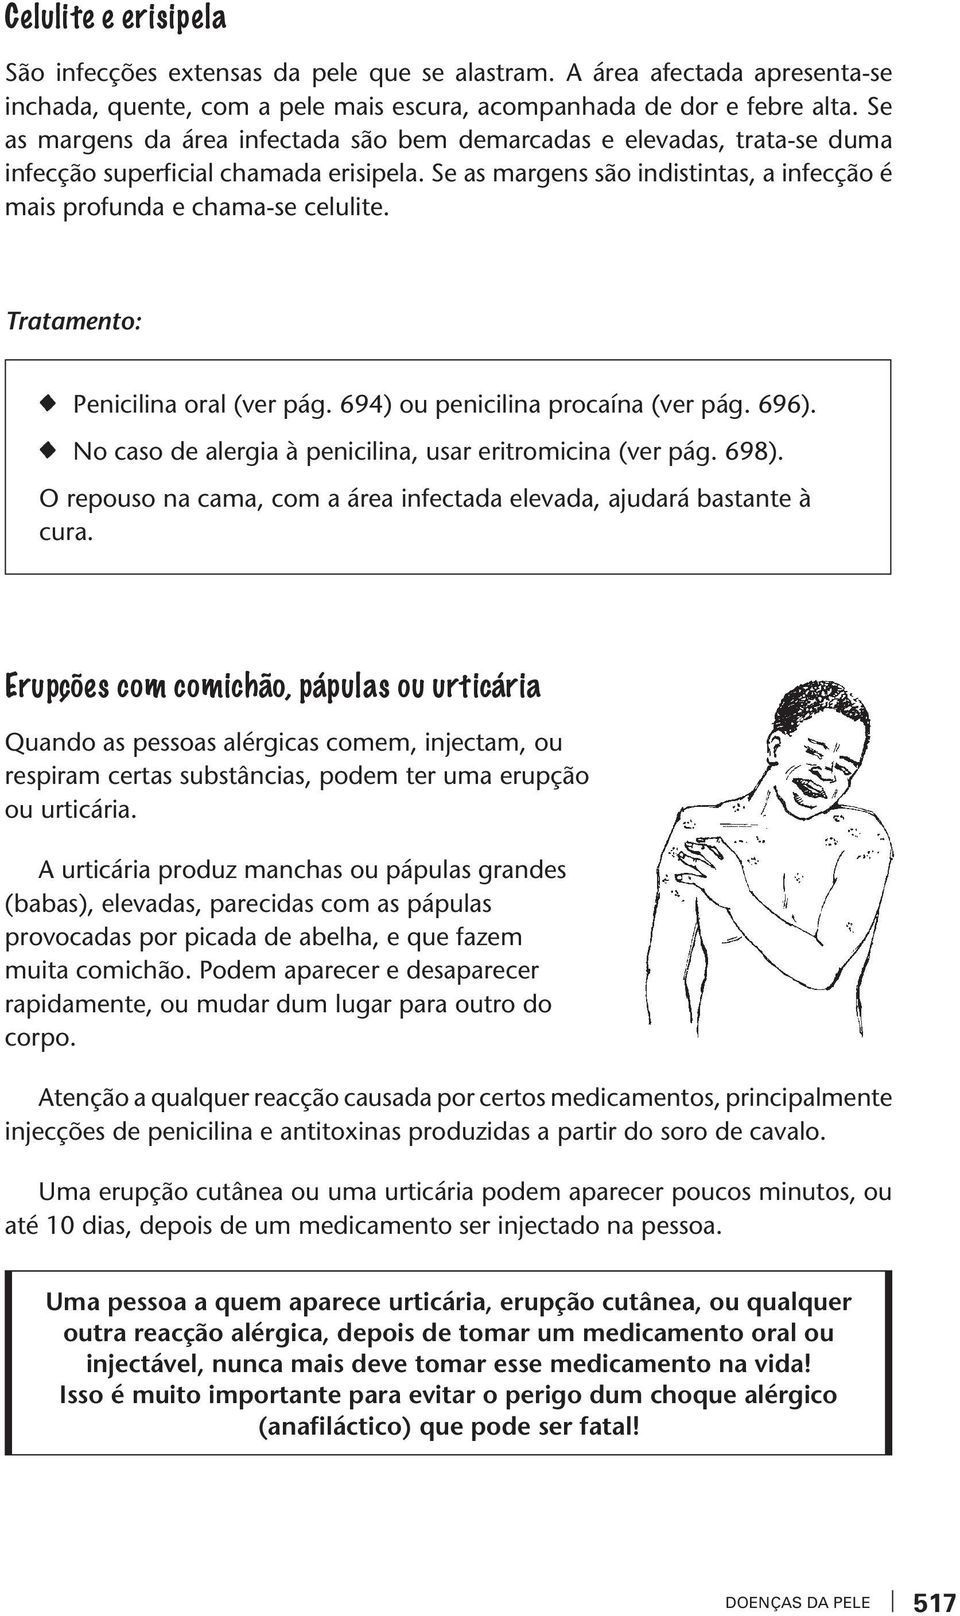 Traameno: Penicilina oral (er pág. 694) ou penicilina procaína (er pág. 696). No caso de alergia à penicilina, usar eriromicina (er pág. 698).